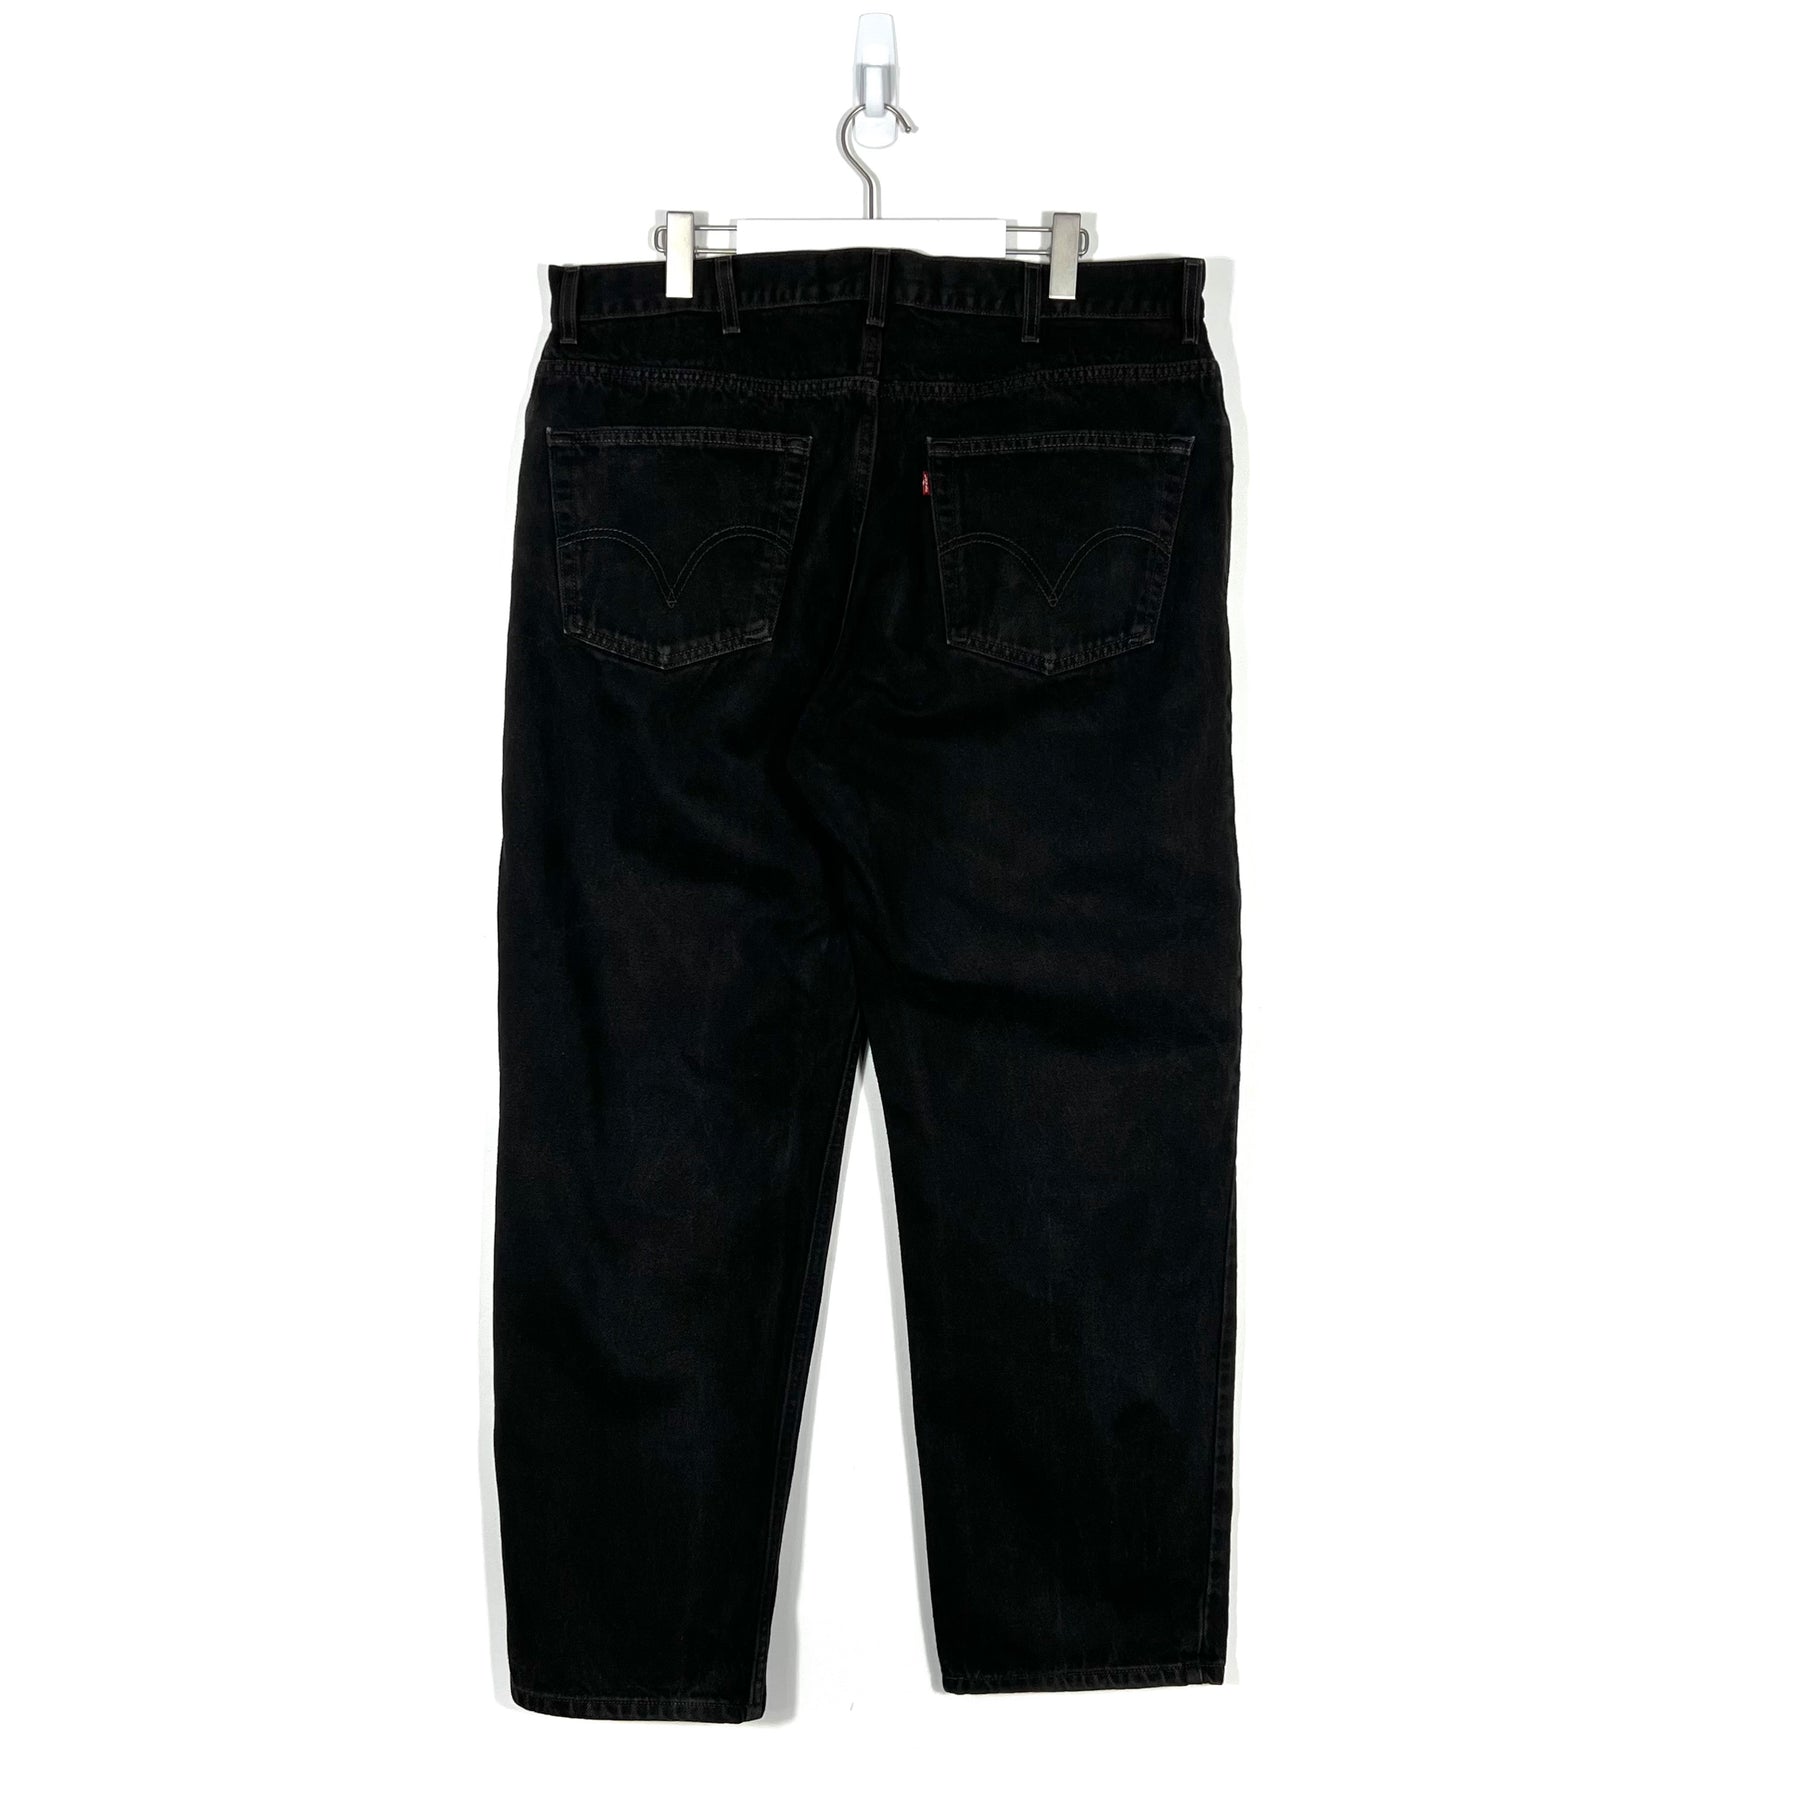 Vintage Levis 550 Jeans - Men's 38/32